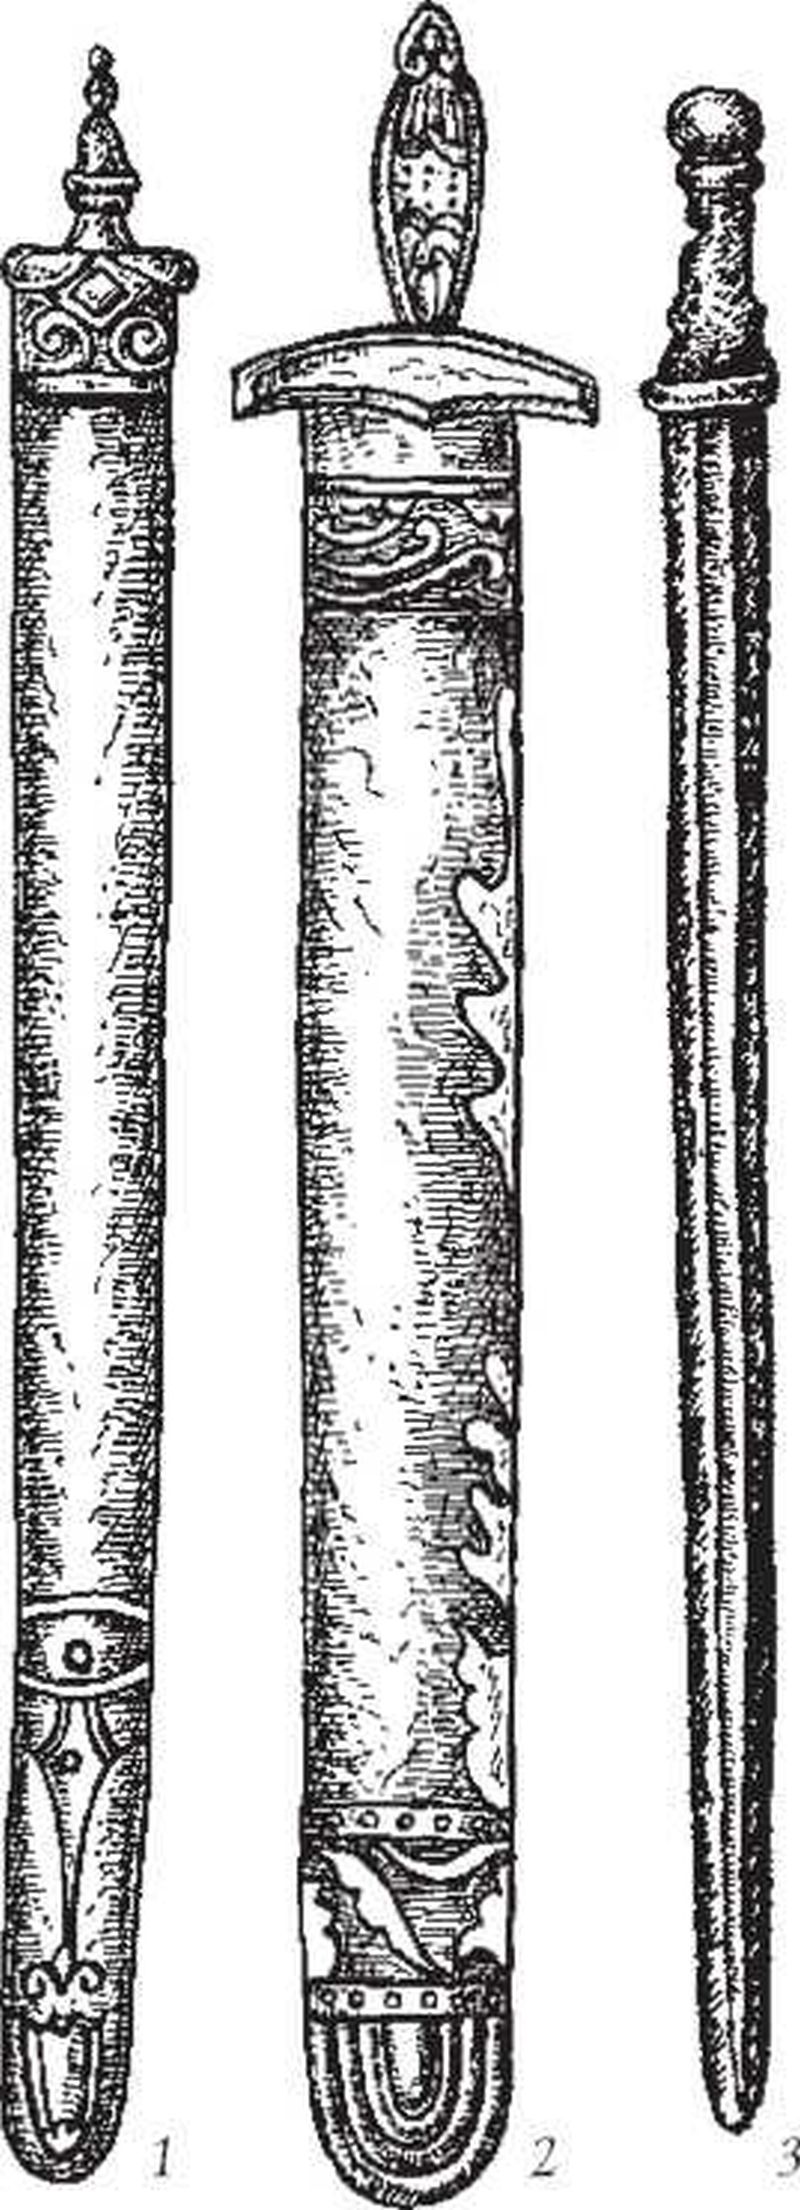 Мечи 1X—X вв., найденные на территории Грузии и Армении. Конструкция данных мечей соответствует многочисленным изображениям данного оружия, встречающегося на византийских произведениях искусства (миниатюрах, фресках, пластике). 1—2 — мечи, обнаруж.енны.е в Грузии; 3 — меч из Ани,, Армения